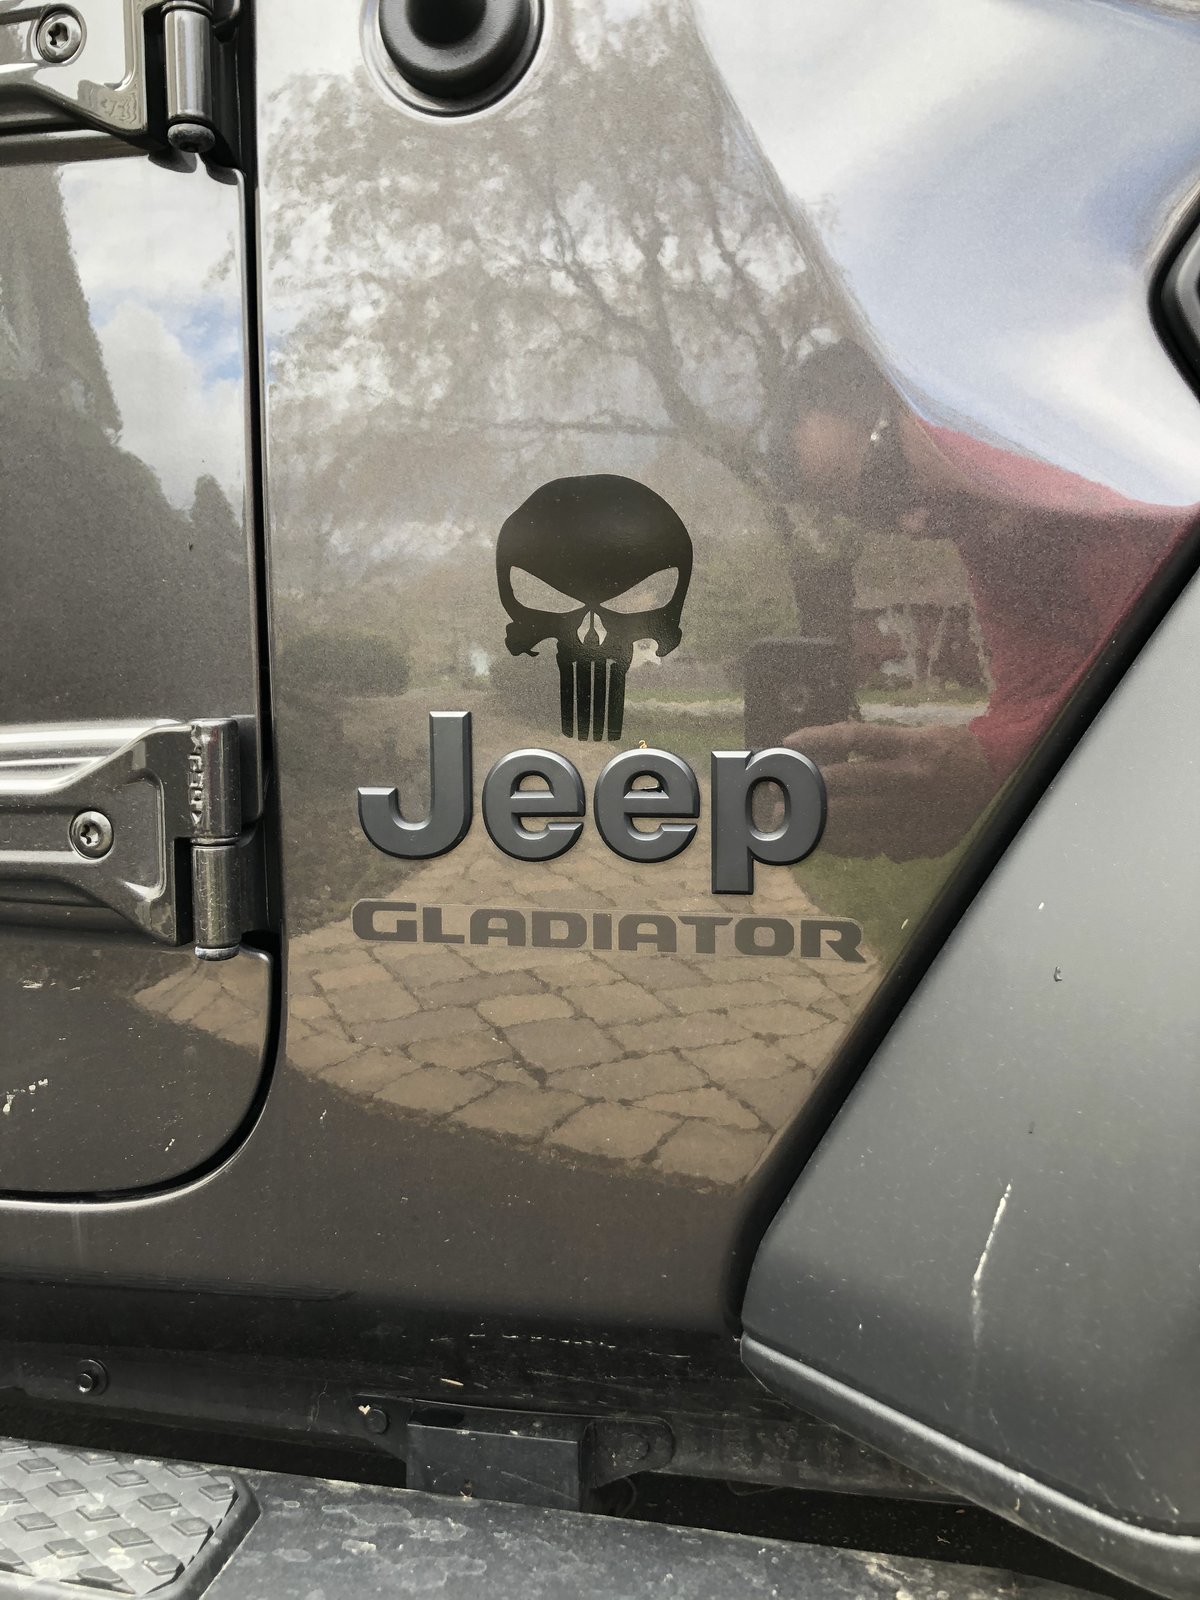 Jeep Gladiator Stickers and decal pics! BDF7AD78-D483-4104-94E7-C319C1DA3E5D